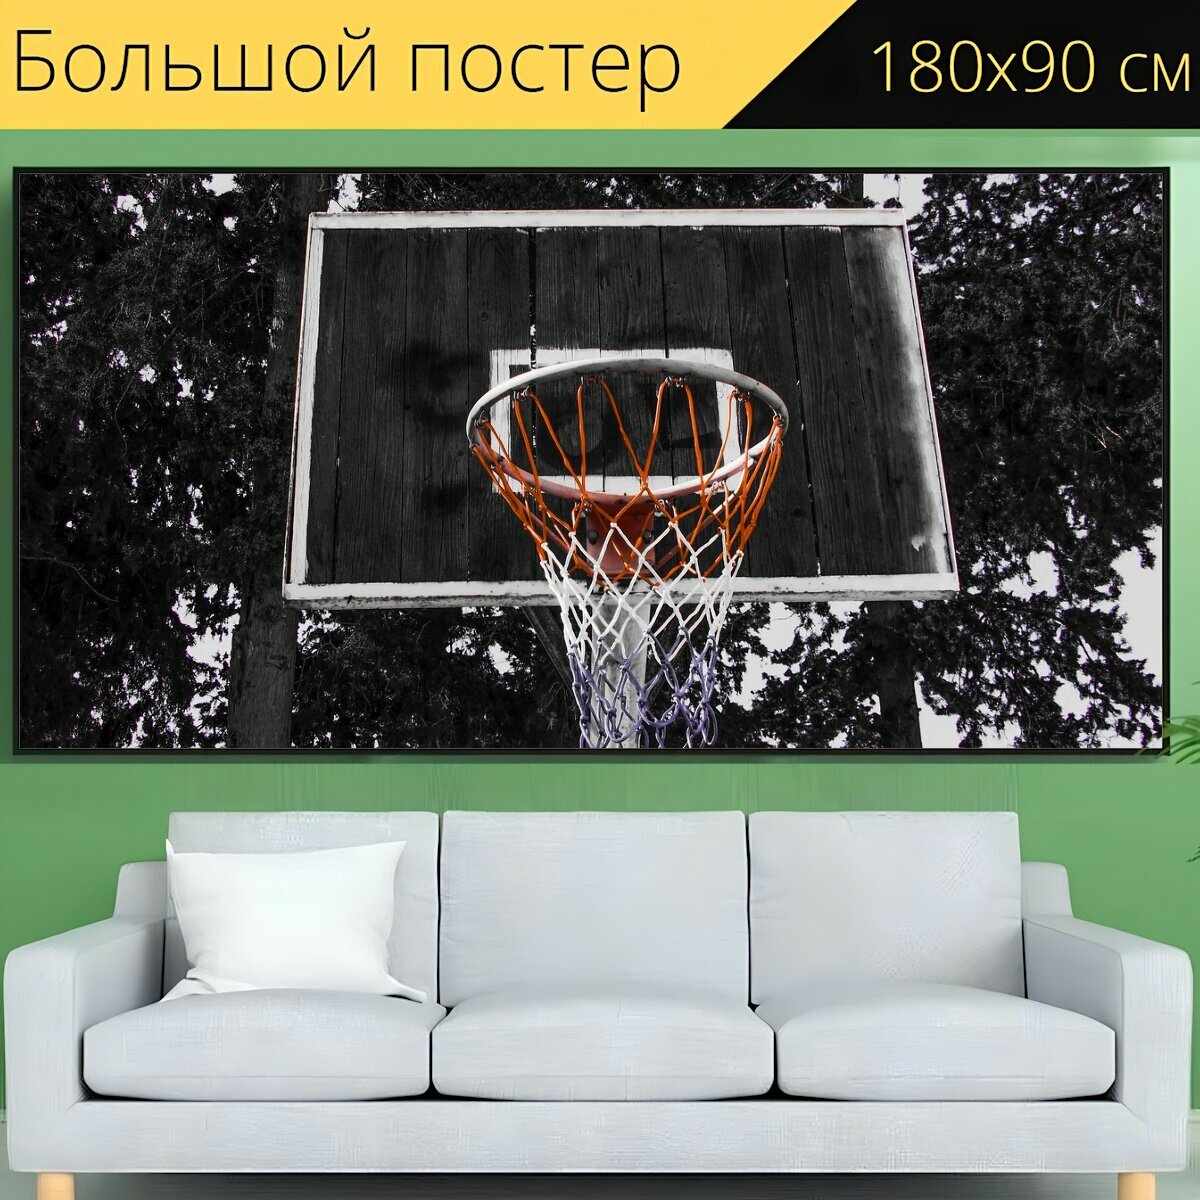 Большой постер "Баскетбол, спорт, сеть" 180 x 90 см. для интерьера